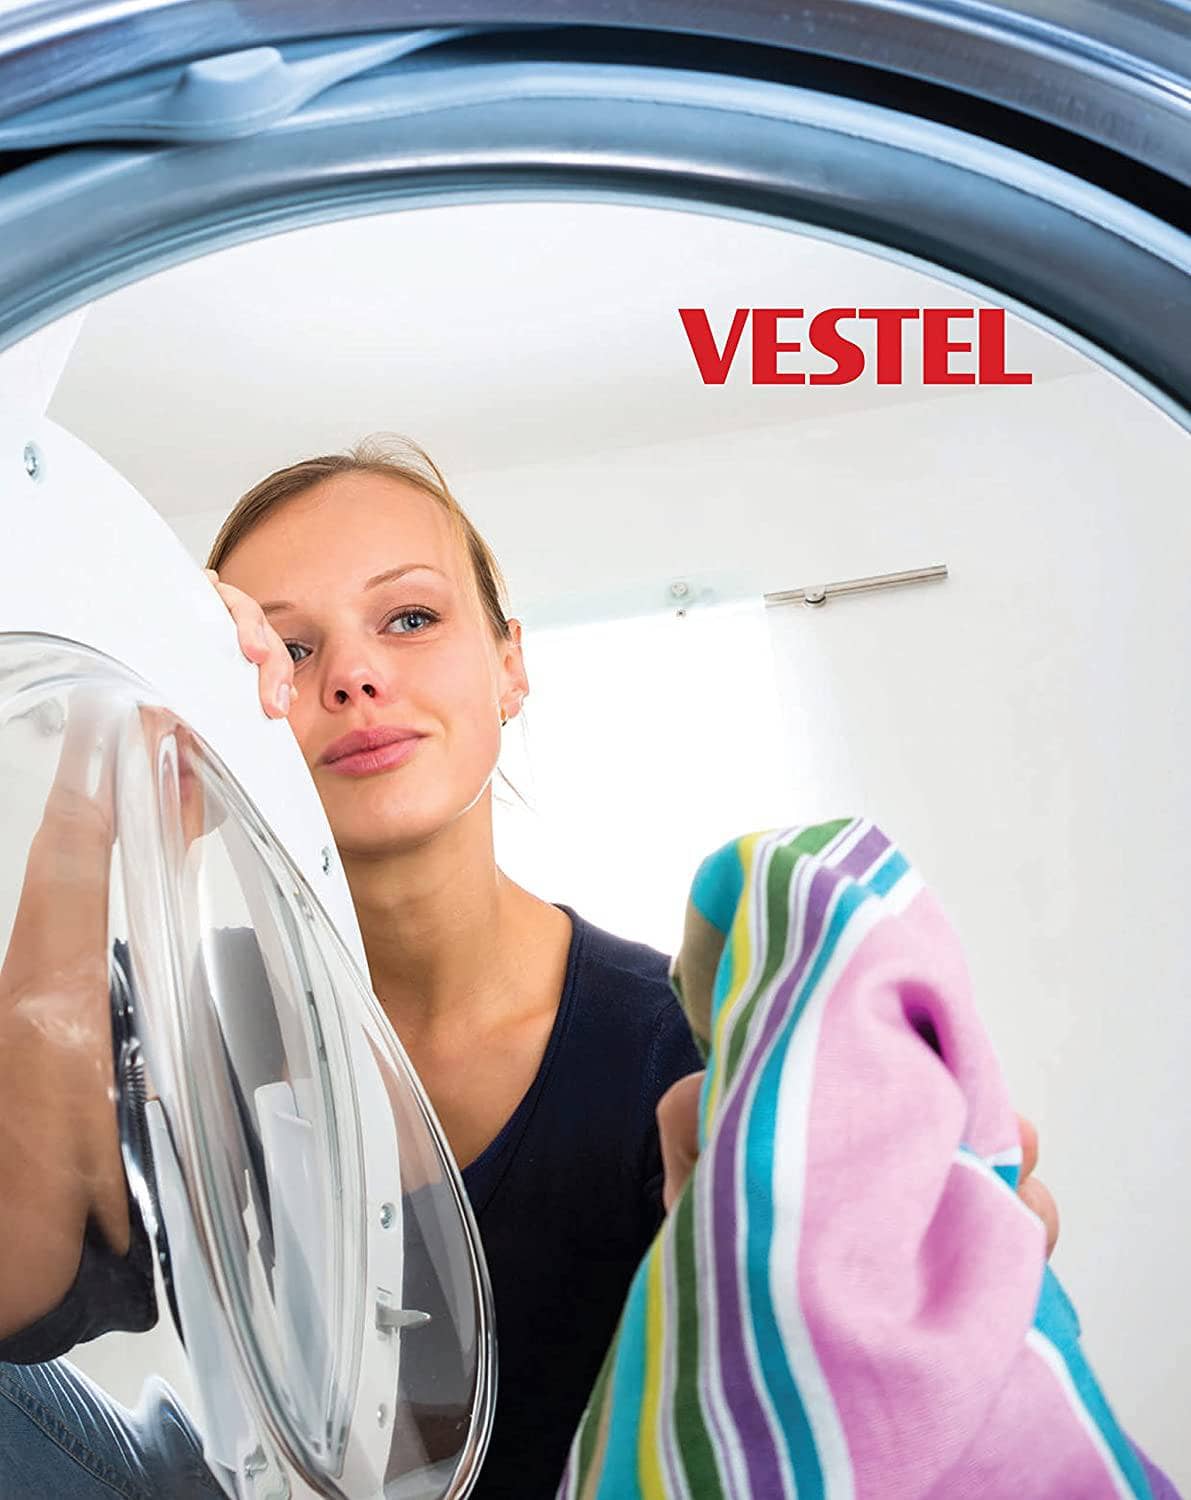 Vestel Washing Machine 6 KG 1000 RPM Model - W6104 - DealYaSteal